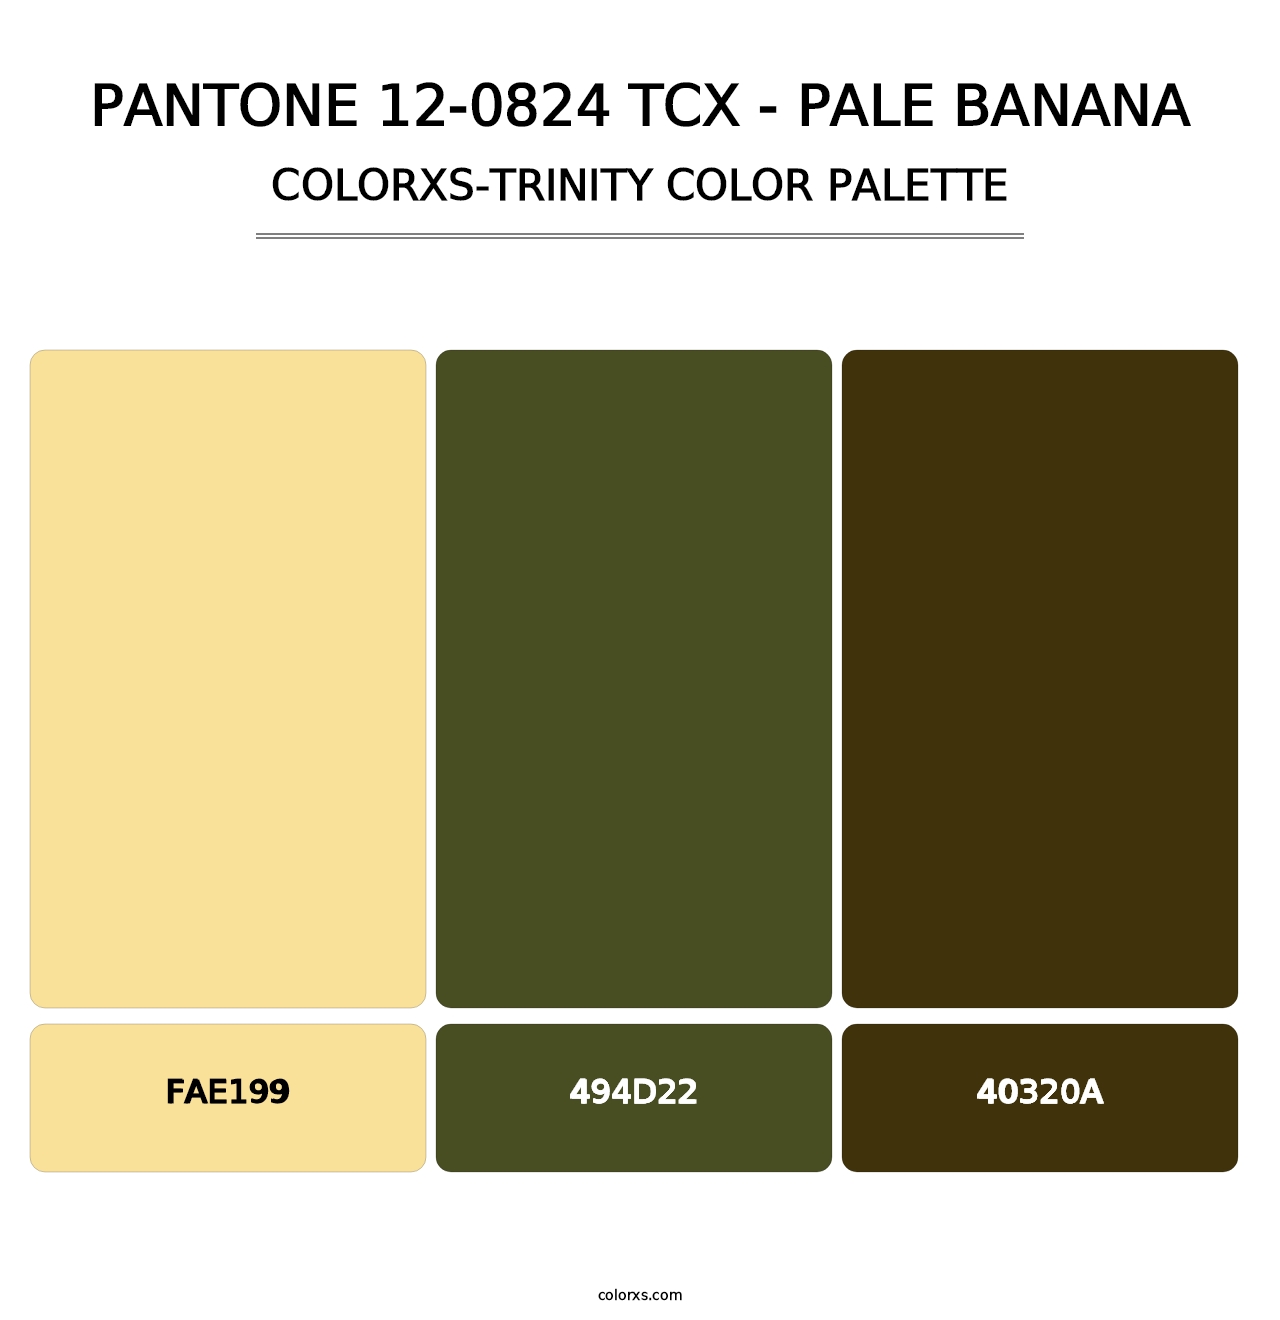 PANTONE 12-0824 TCX - Pale Banana - Colorxs Trinity Palette